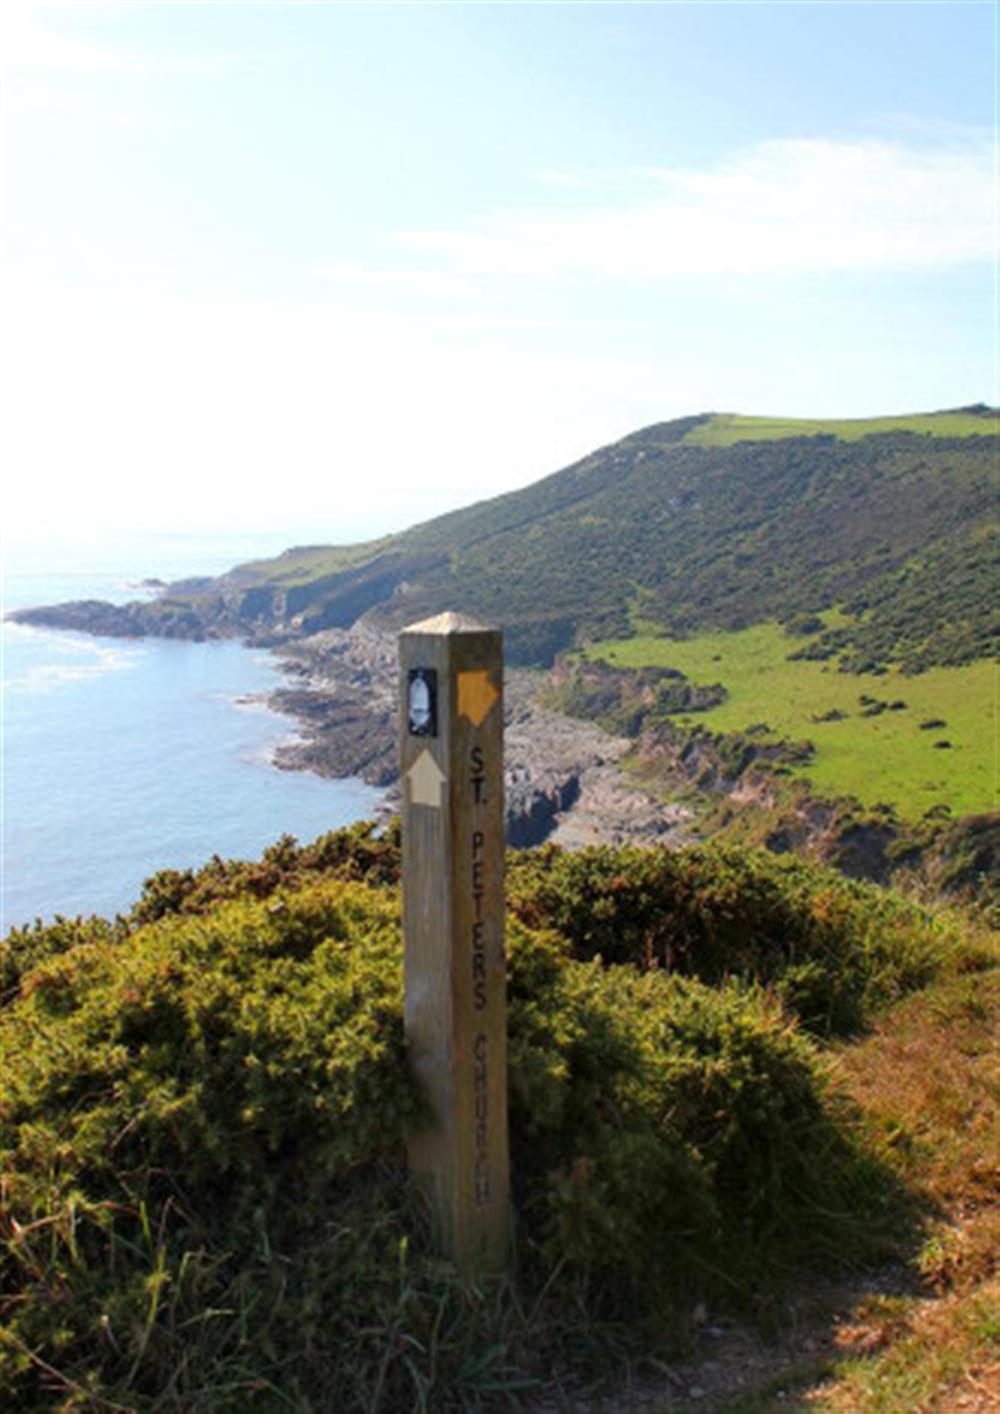 The South West Coastal Path.